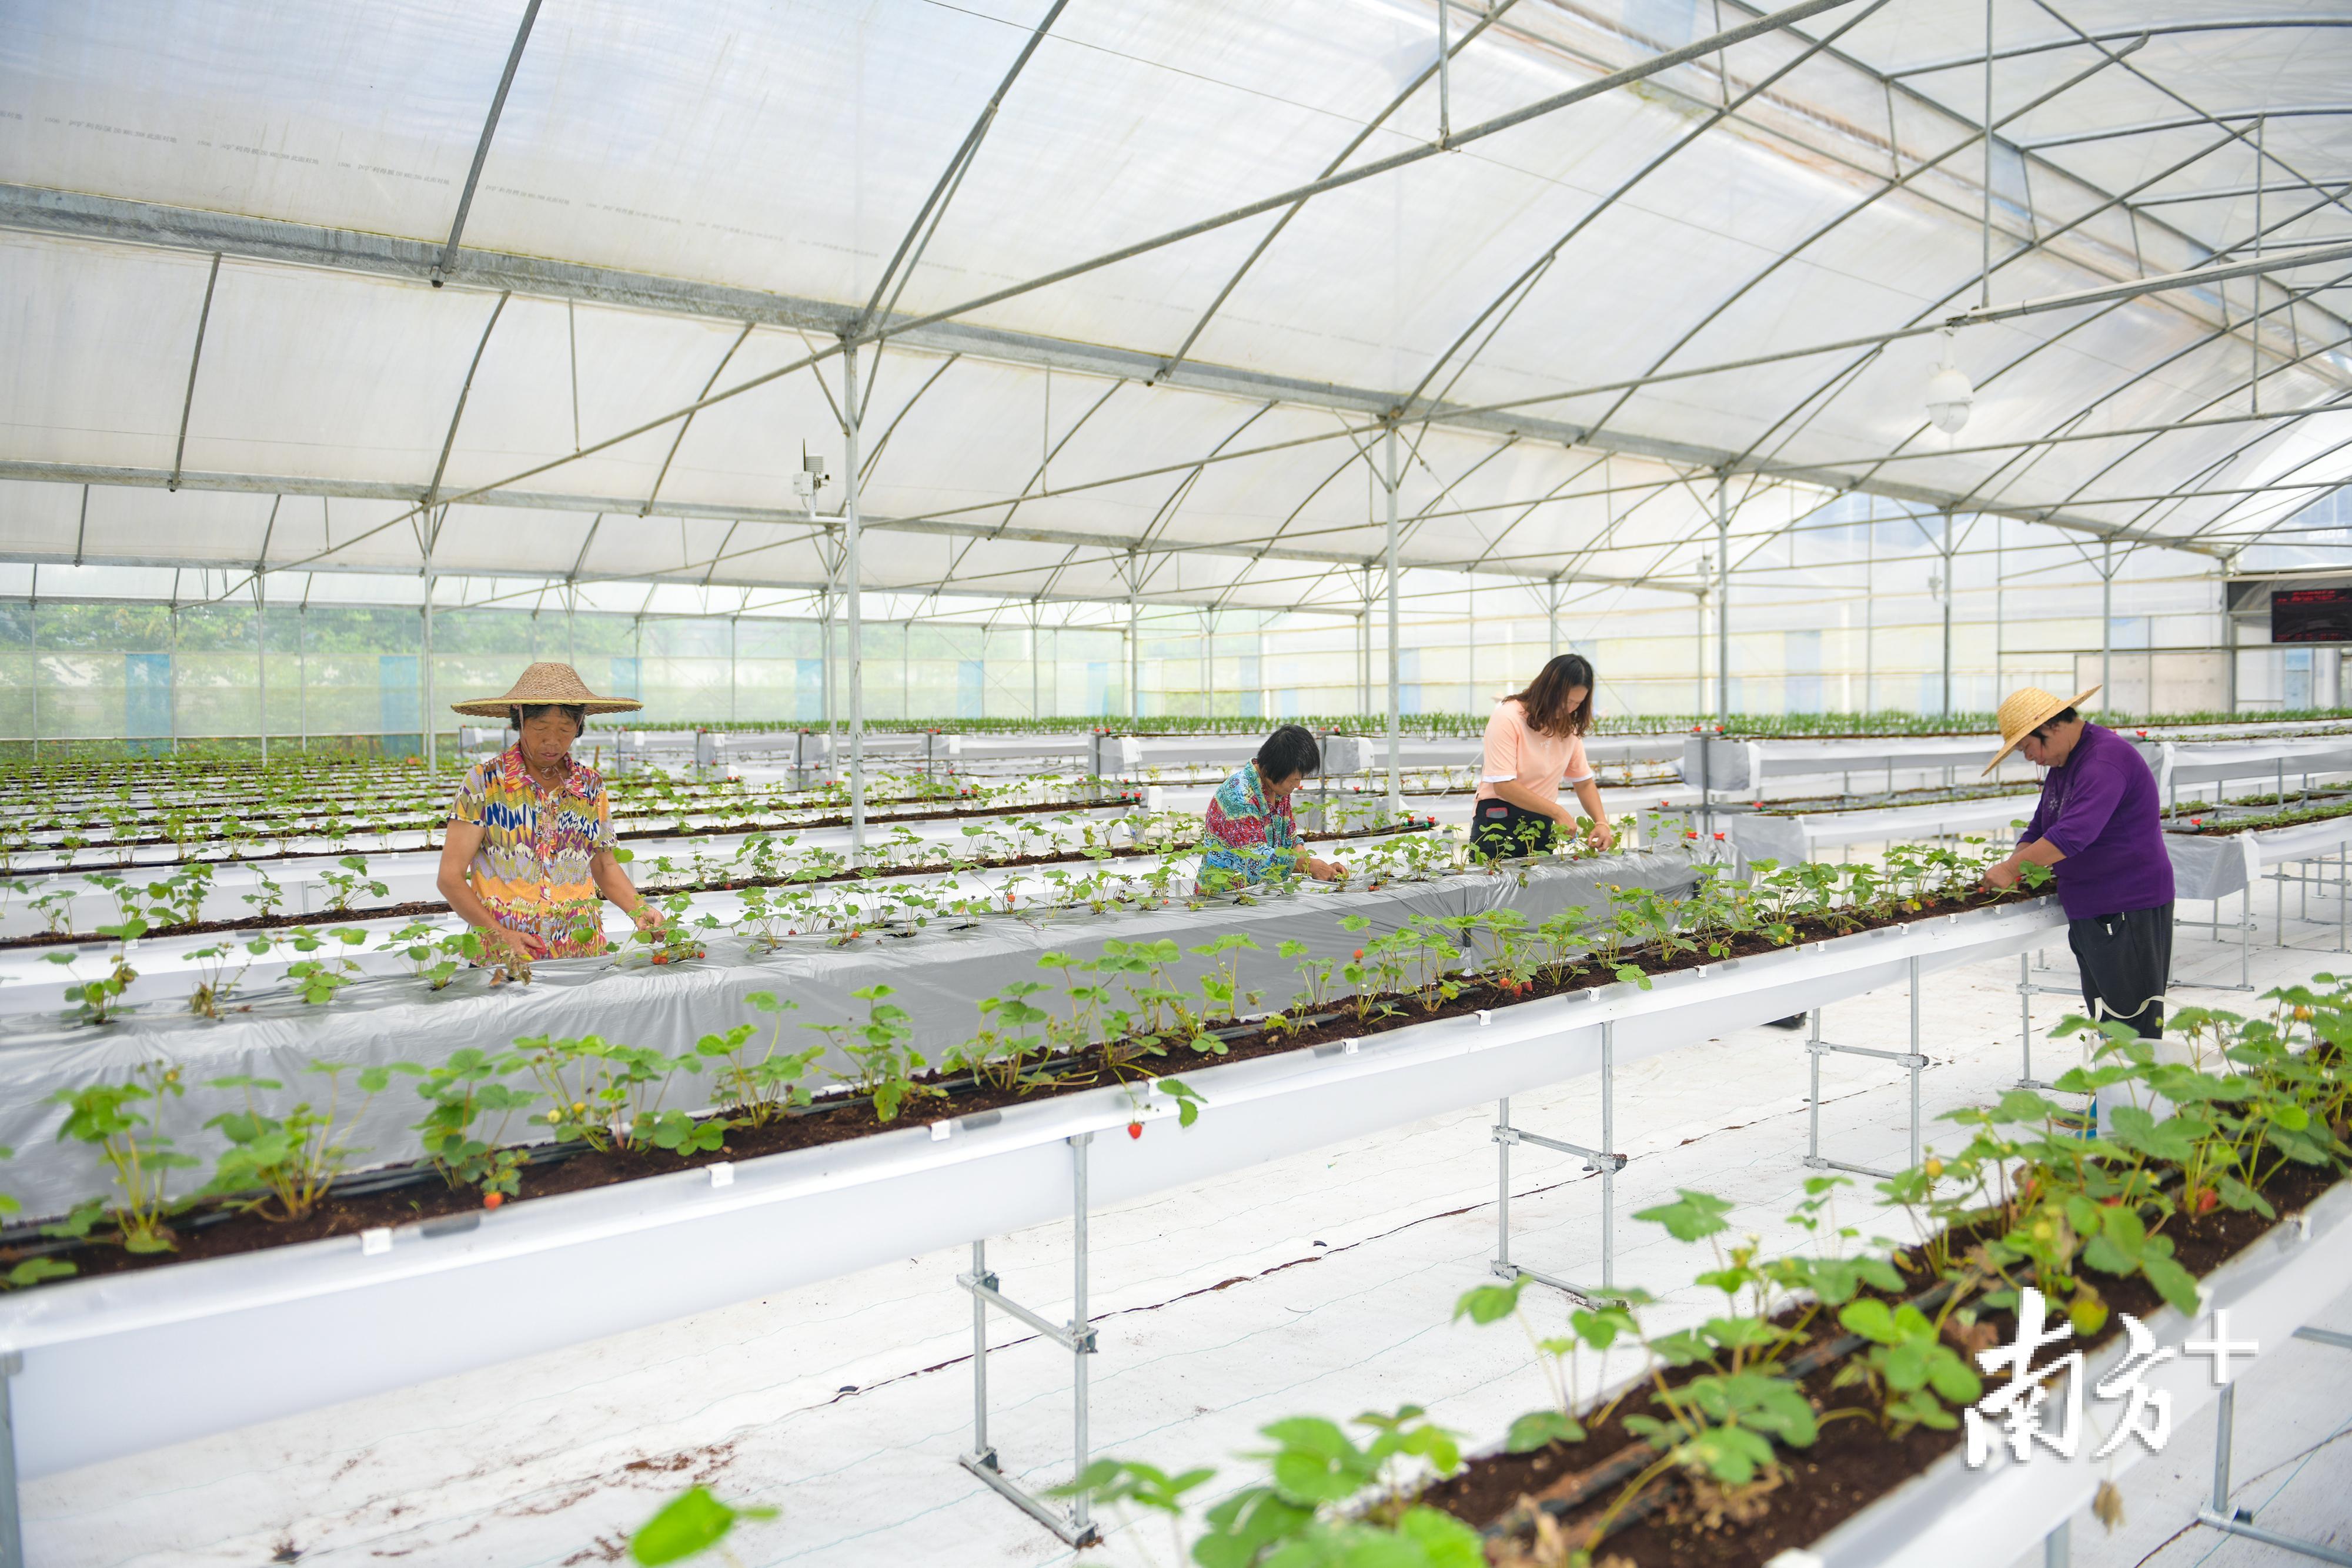 位于侯北村的华农互联休闲观光农业基地，利用大棚种植技术培育四季草莓等蔬果。